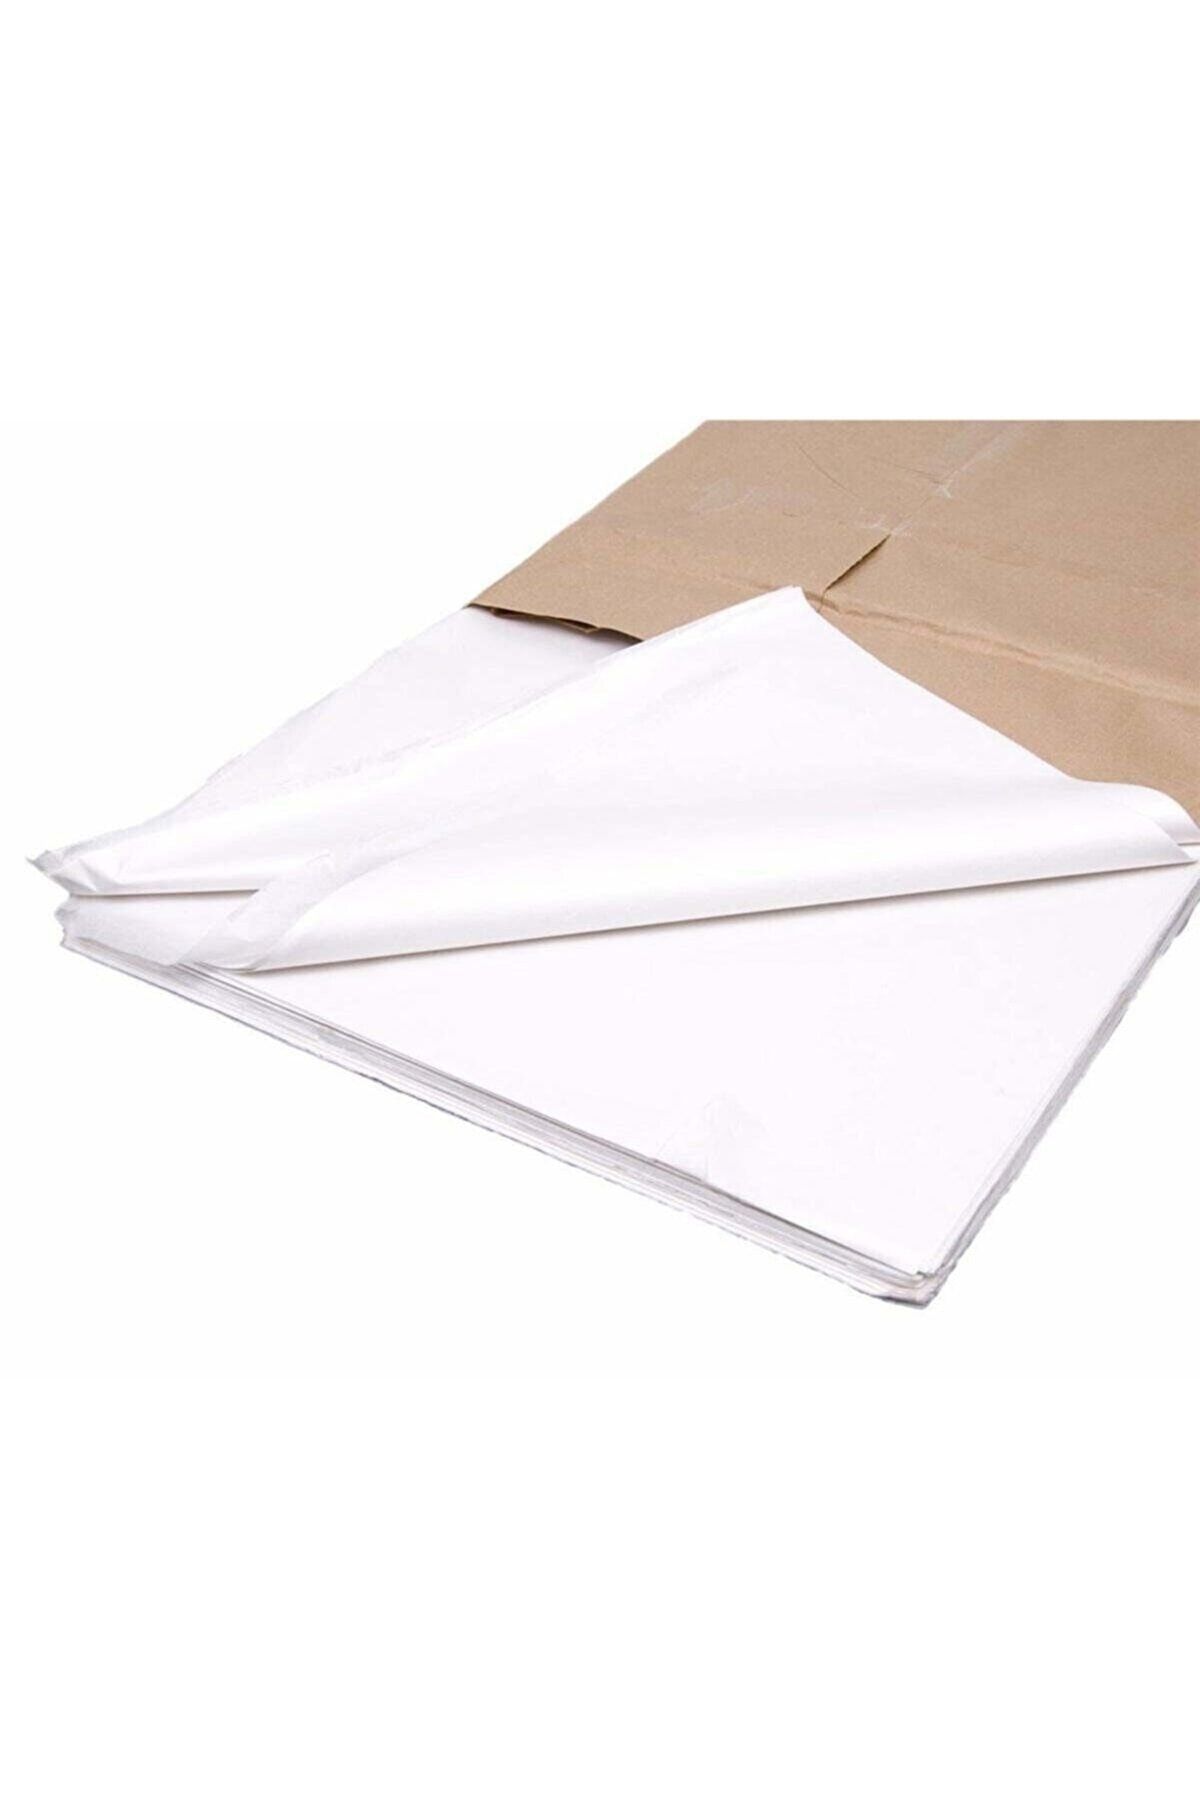 ÜNSALAN HOBİ Milaj Parşömen Kağıdı Kalıp Kağıdı & Eskiz Kağıdı 32 Adet 70 X 100 Büyük Boy Ultra Şeffaf